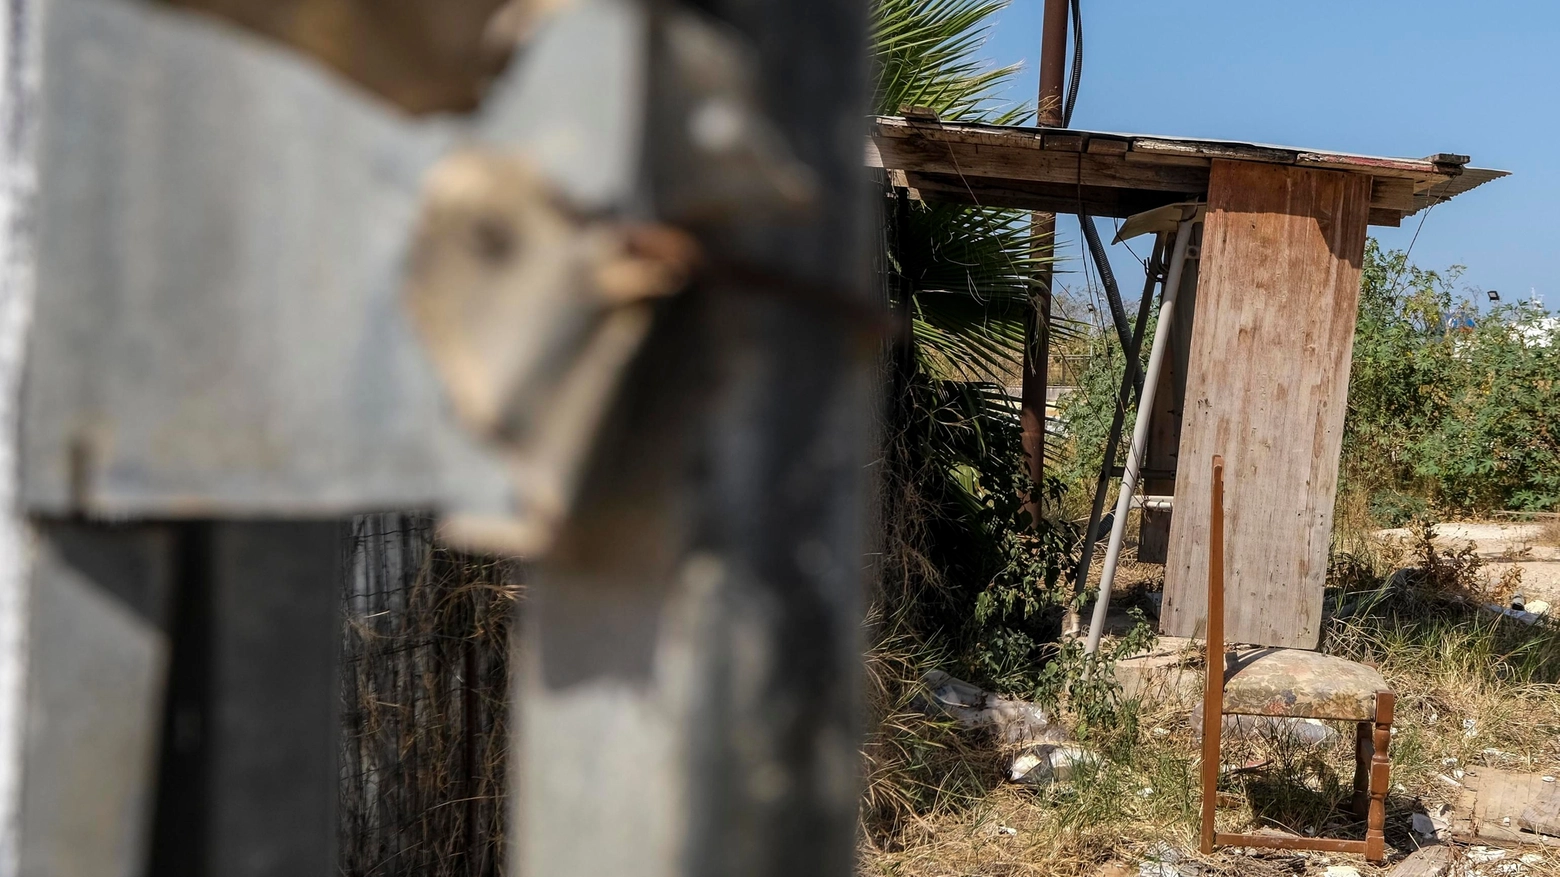 Il cantiere abbandonato i centro a Palermo dove è avvenuto lo stupro di gruppo